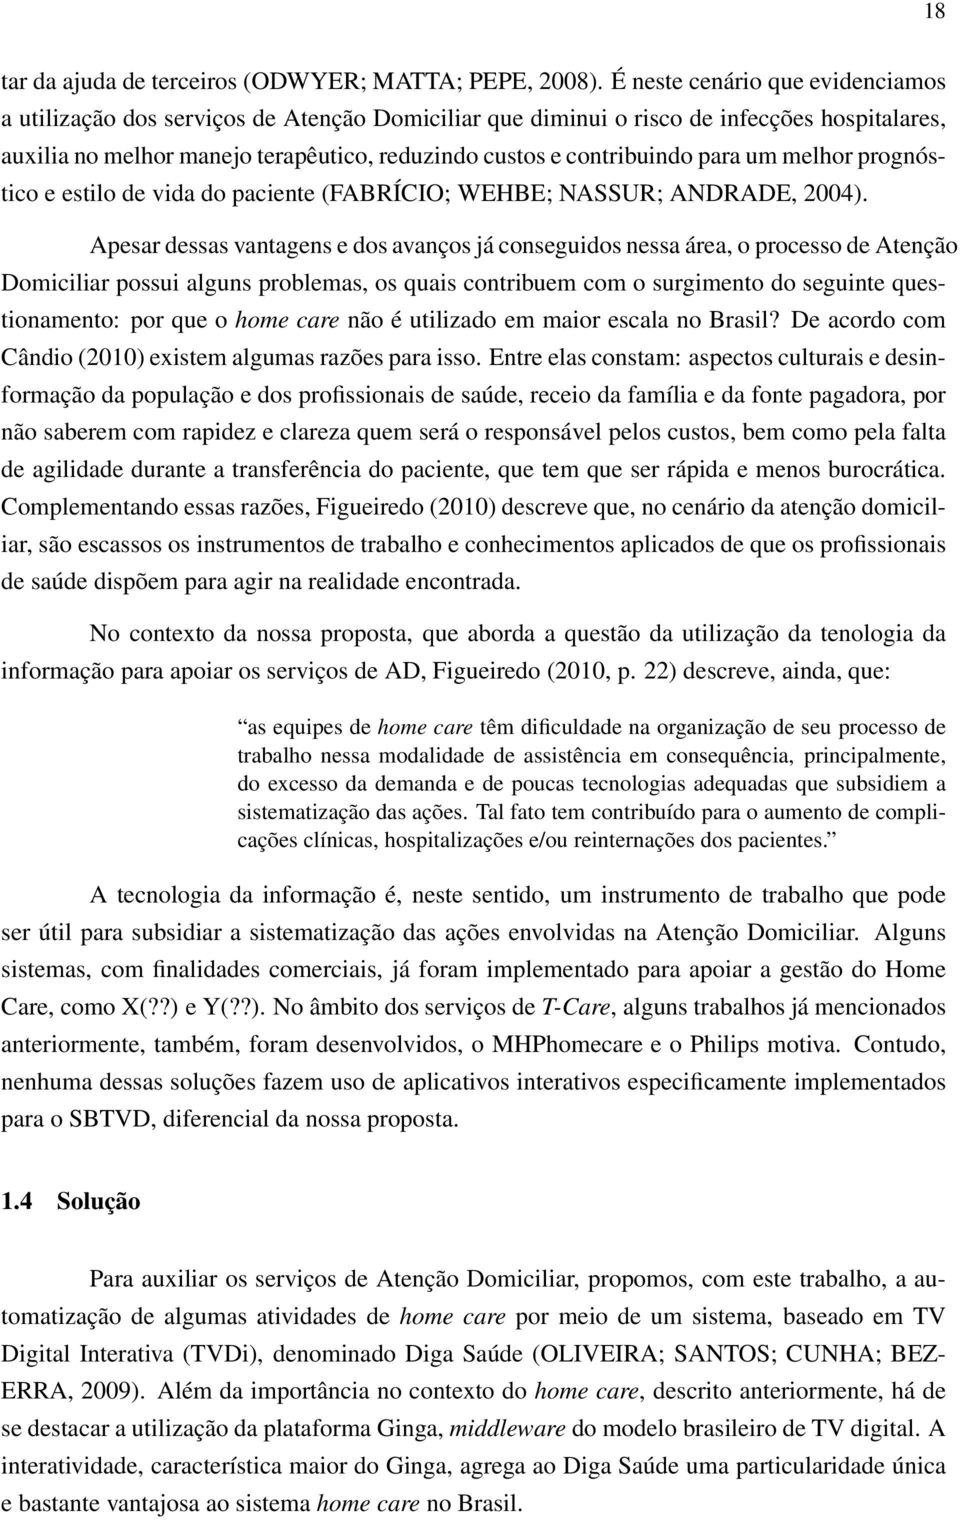 para um melhor prognóstico e estilo de vida do paciente (FABRÍCIO; WEHBE; NASSUR; ANDRADE, 2004).